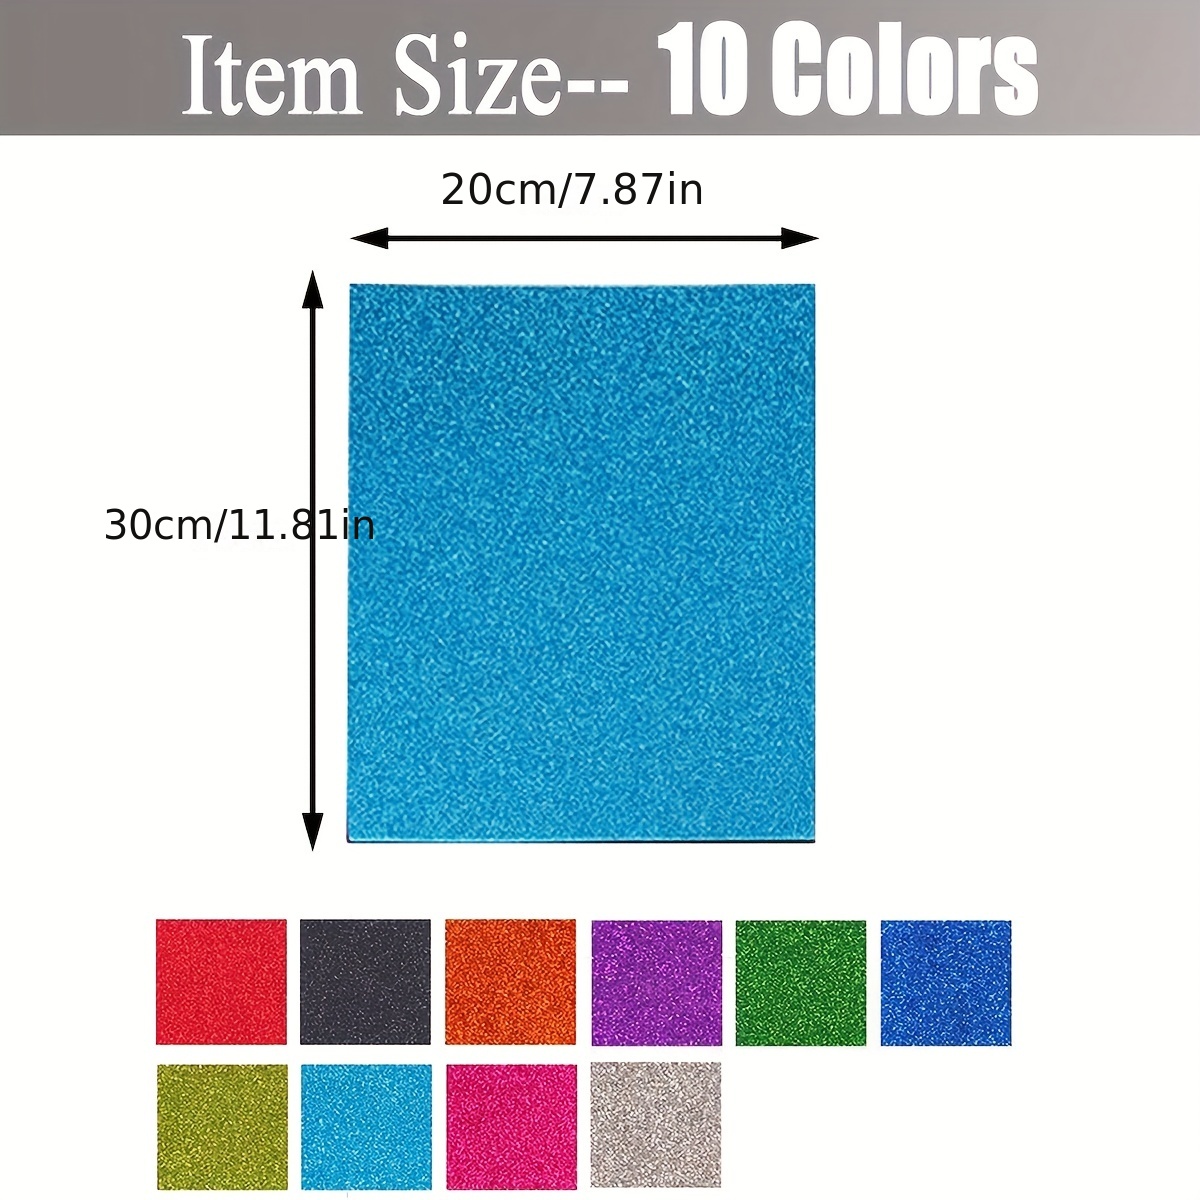 10sheets Adhesive Glitter Foam Sheet Letter Size Craft Foam Color EVA Foam  With Sticky Back Colorful Sponge Board Foamy (11.81*7.87inch)